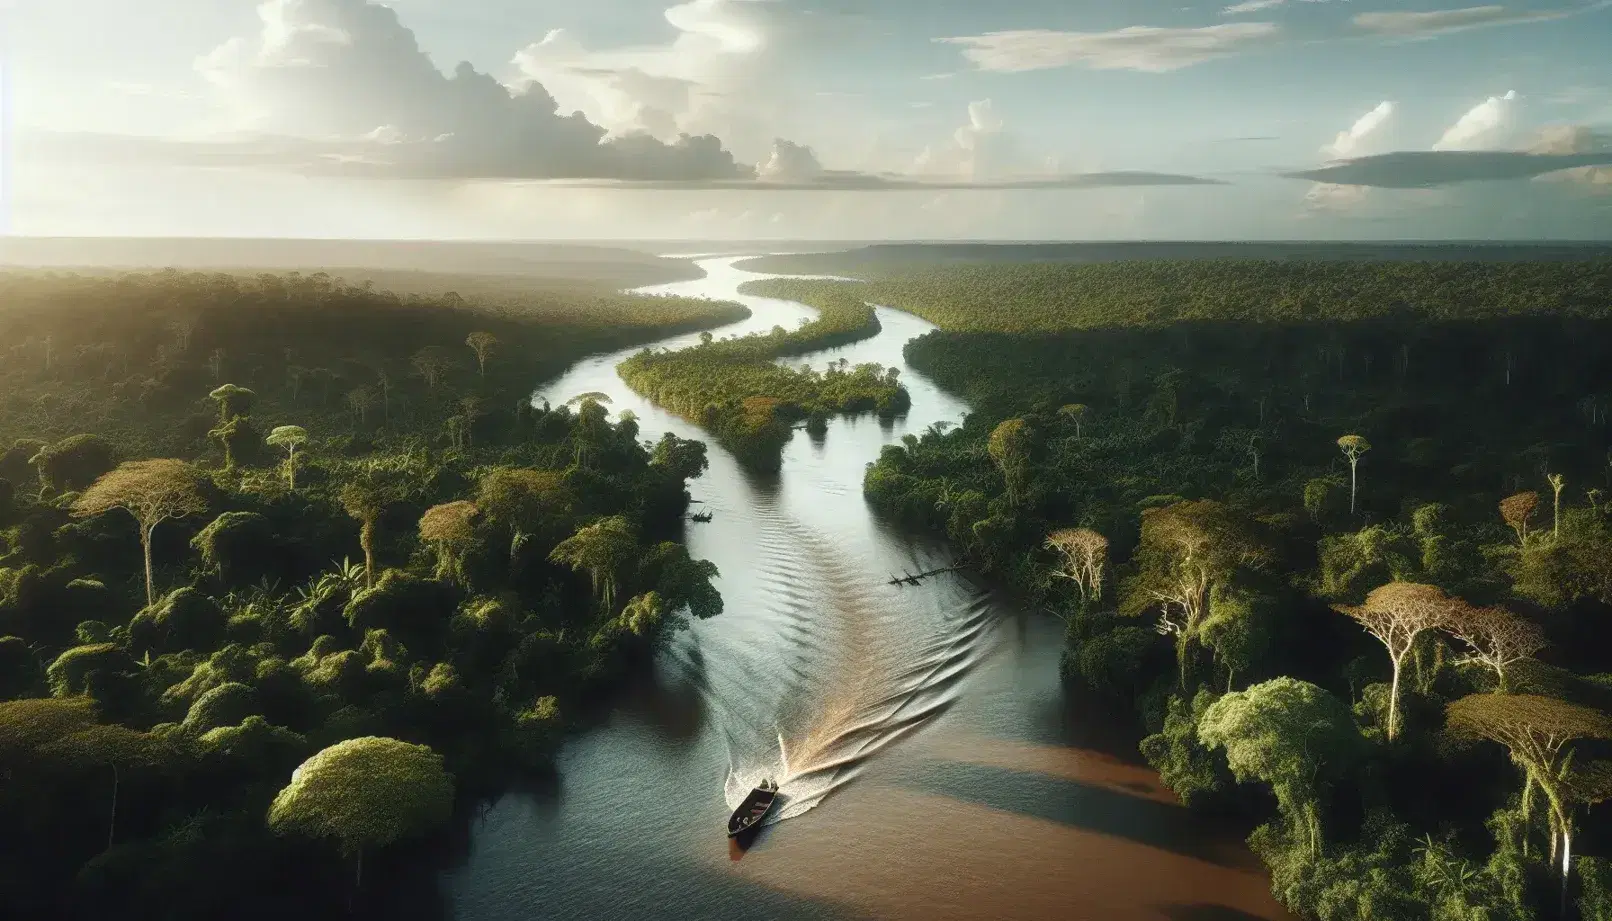 Vista aérea de un río serpenteante en la selva tropical con un bote de madera y dos personas navegando, rodeados de exuberante vegetación verde.